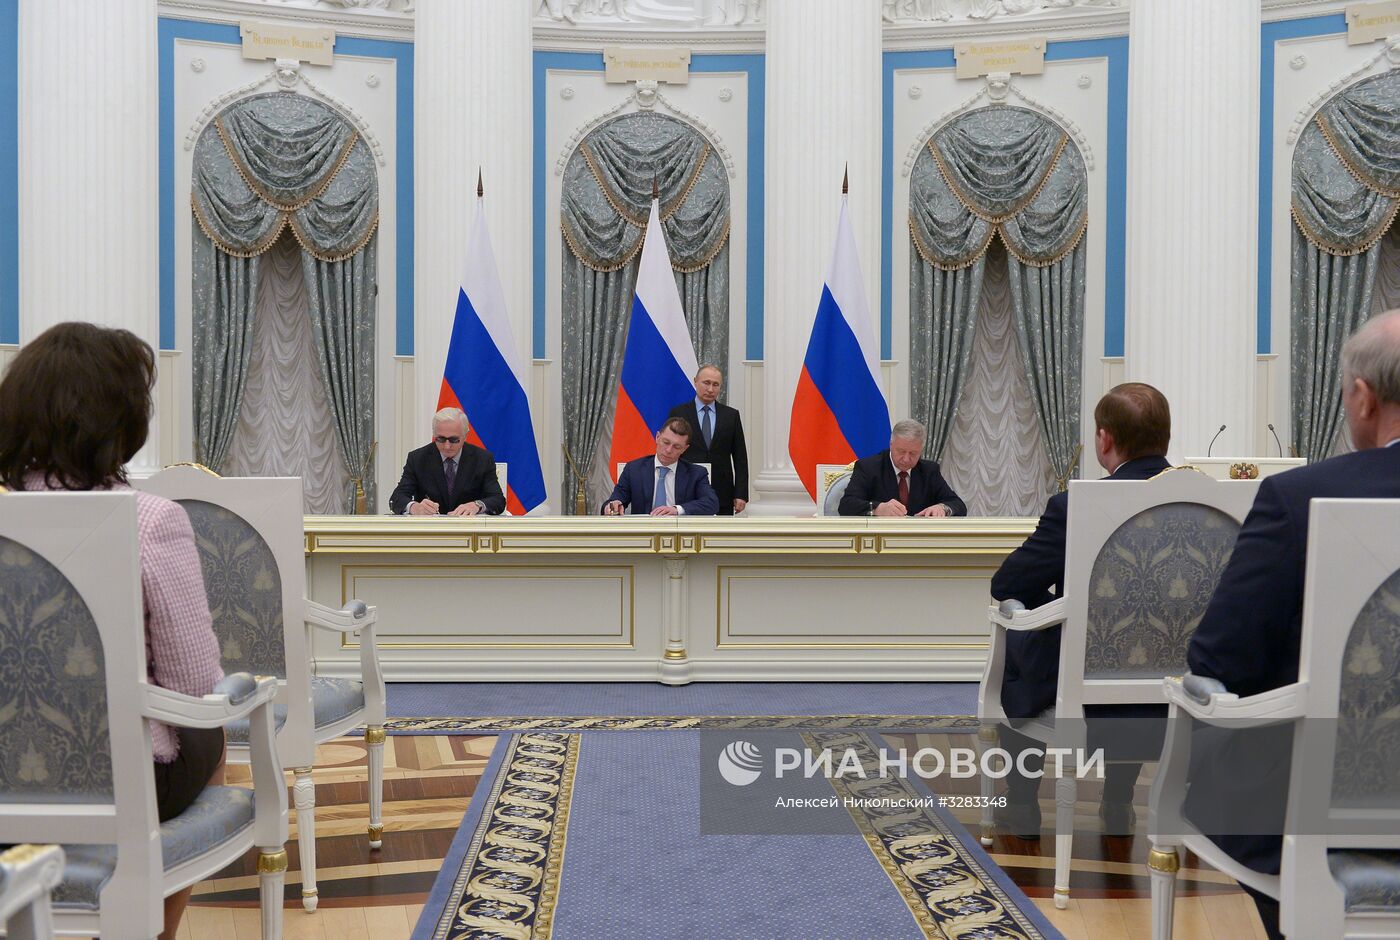 Президент РФ В. Путин на церемонии подписания соглашения между общероссийскими объединениями профсоюзов, работодателей и правительством РФ